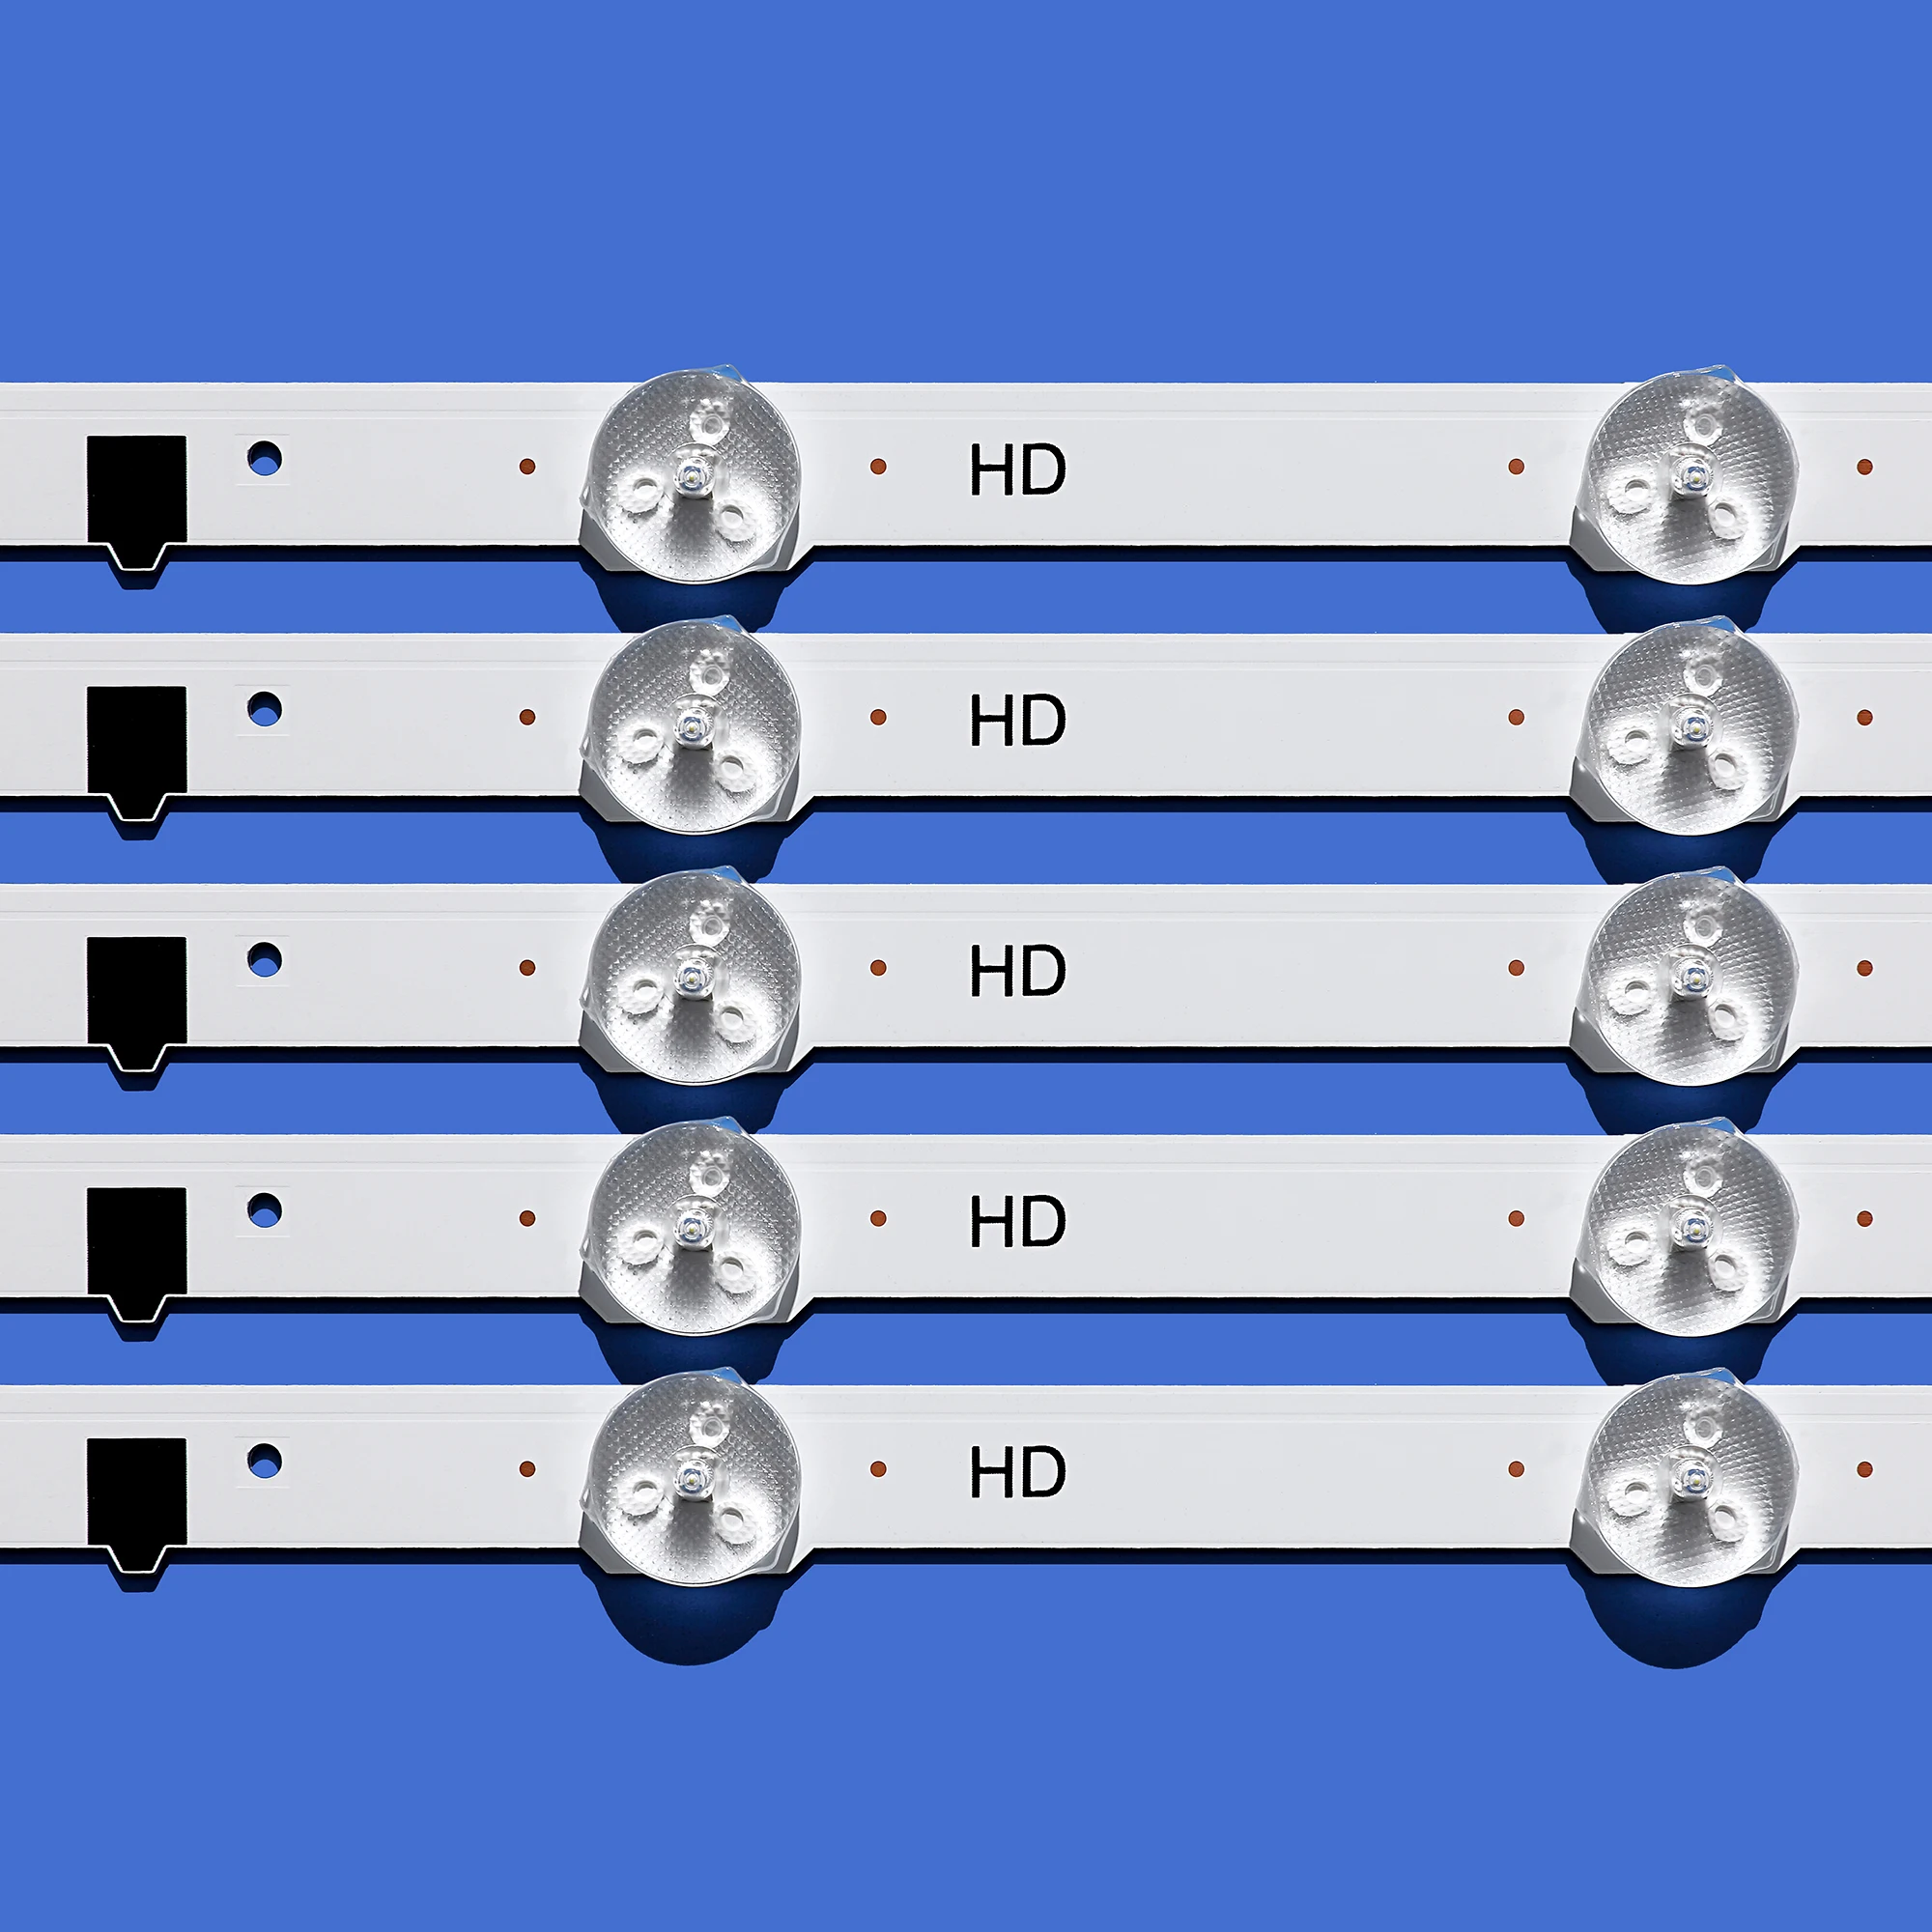 Bande de rétroéclairage LED pour TV Samsung, remplacement des barres,  UE32F5500AY, UE32F5500AW, UE32F5500AK, UE32F5500AS, 5 pièces - AliExpress